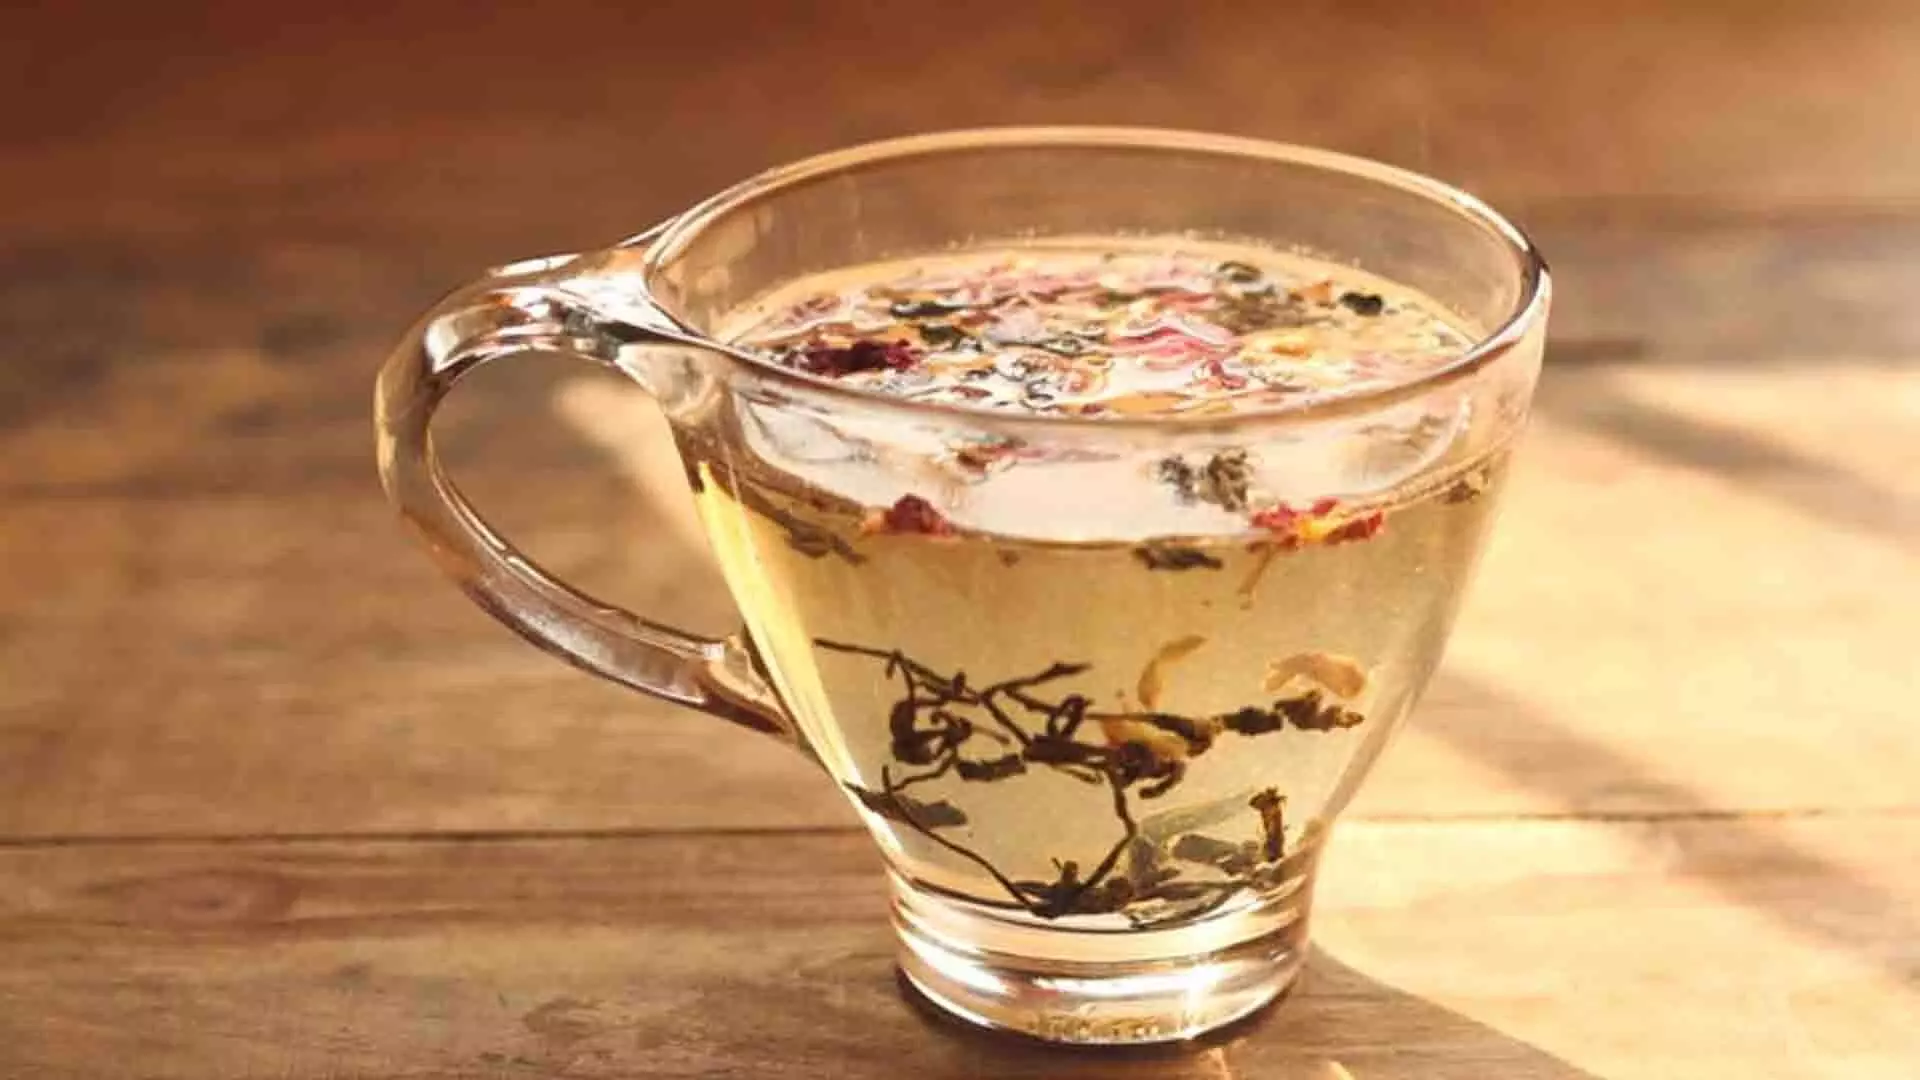 अपने घर पर ही चखे कश्मीरी चाय कहवा का स्वाद, करें मेहमानों का शाही स्वागत